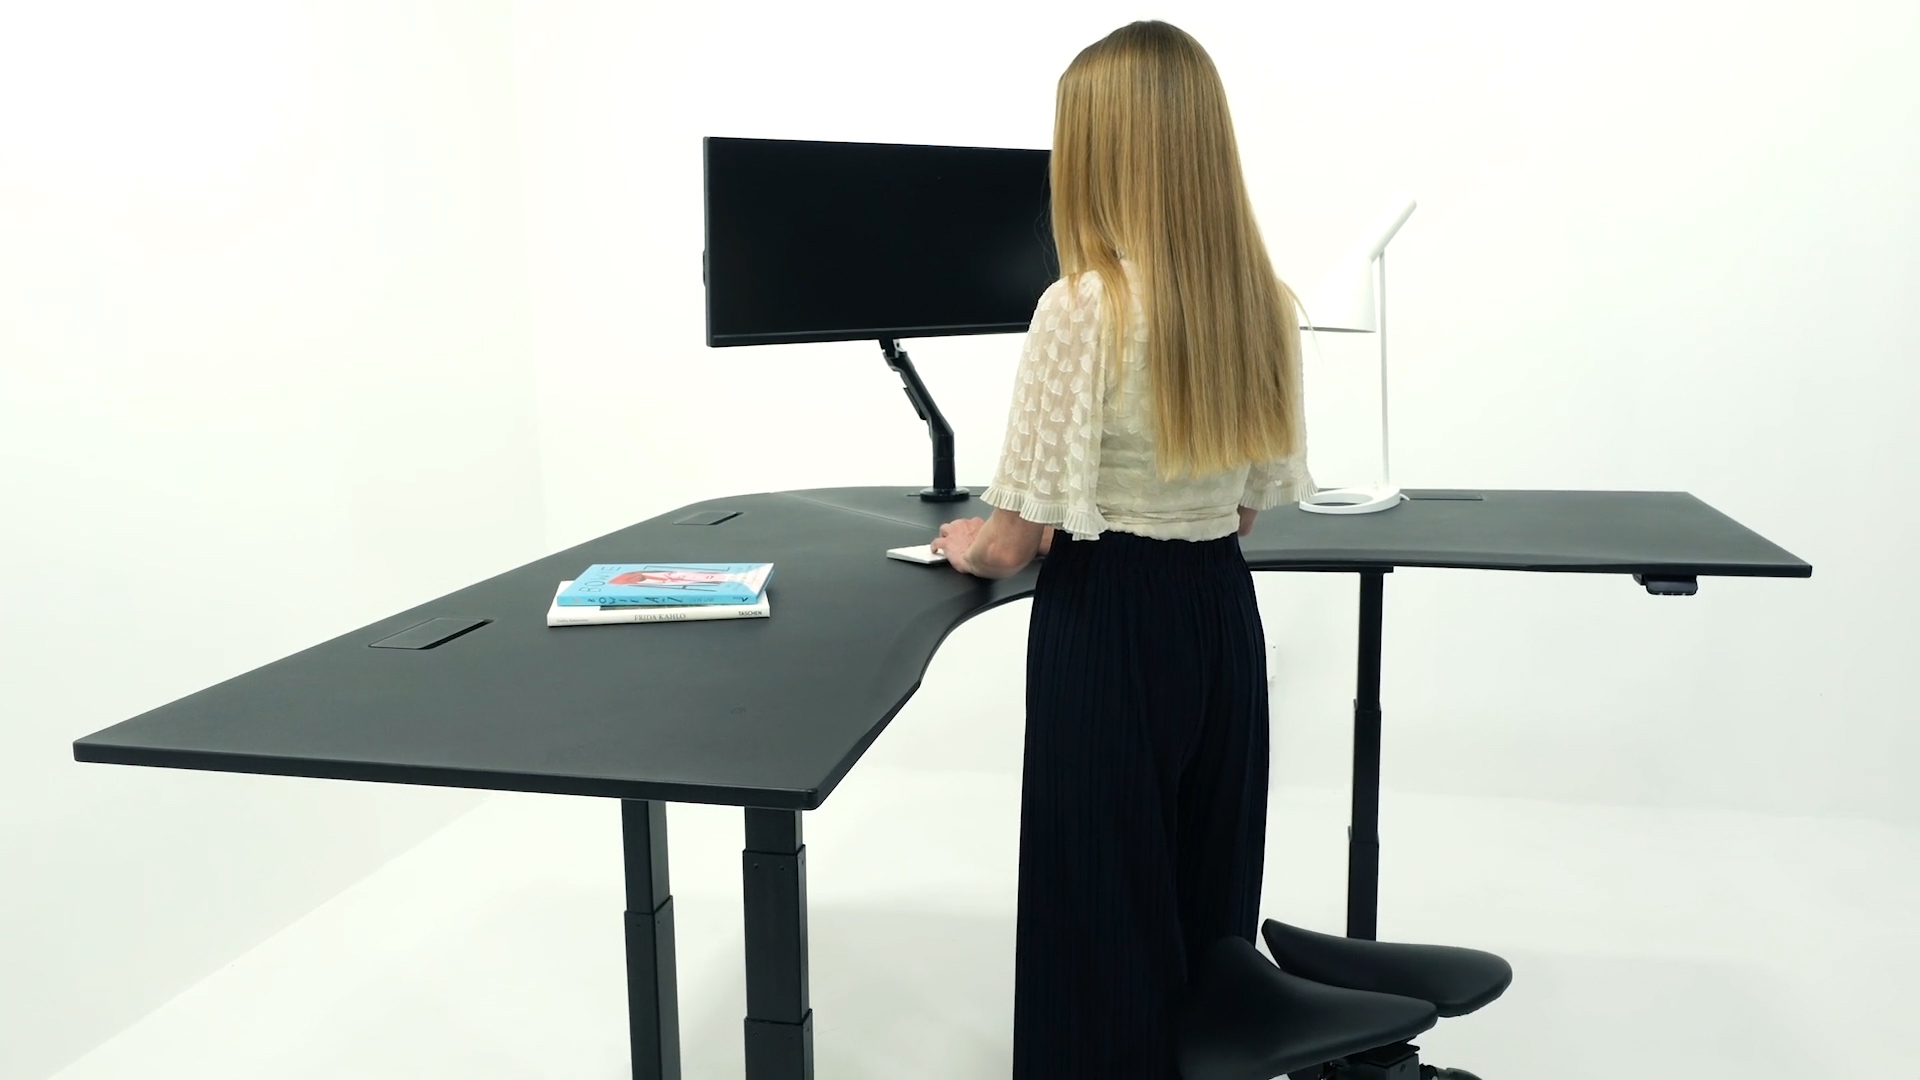 Height Adjustable & Standing Desks Desks You'll Love